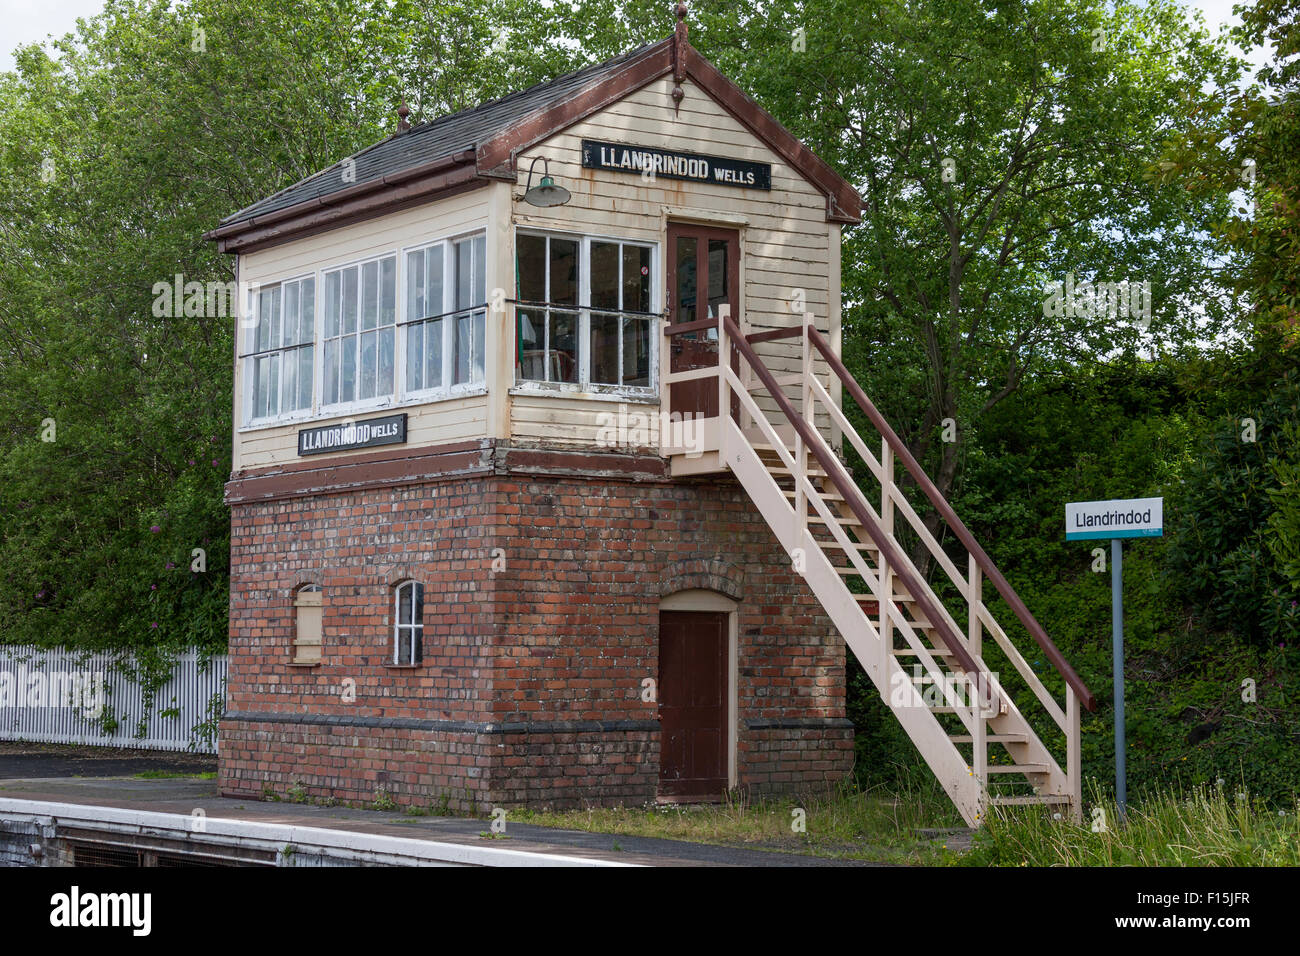 Old Railway signal box, Llandrindod Wells Stock Photo